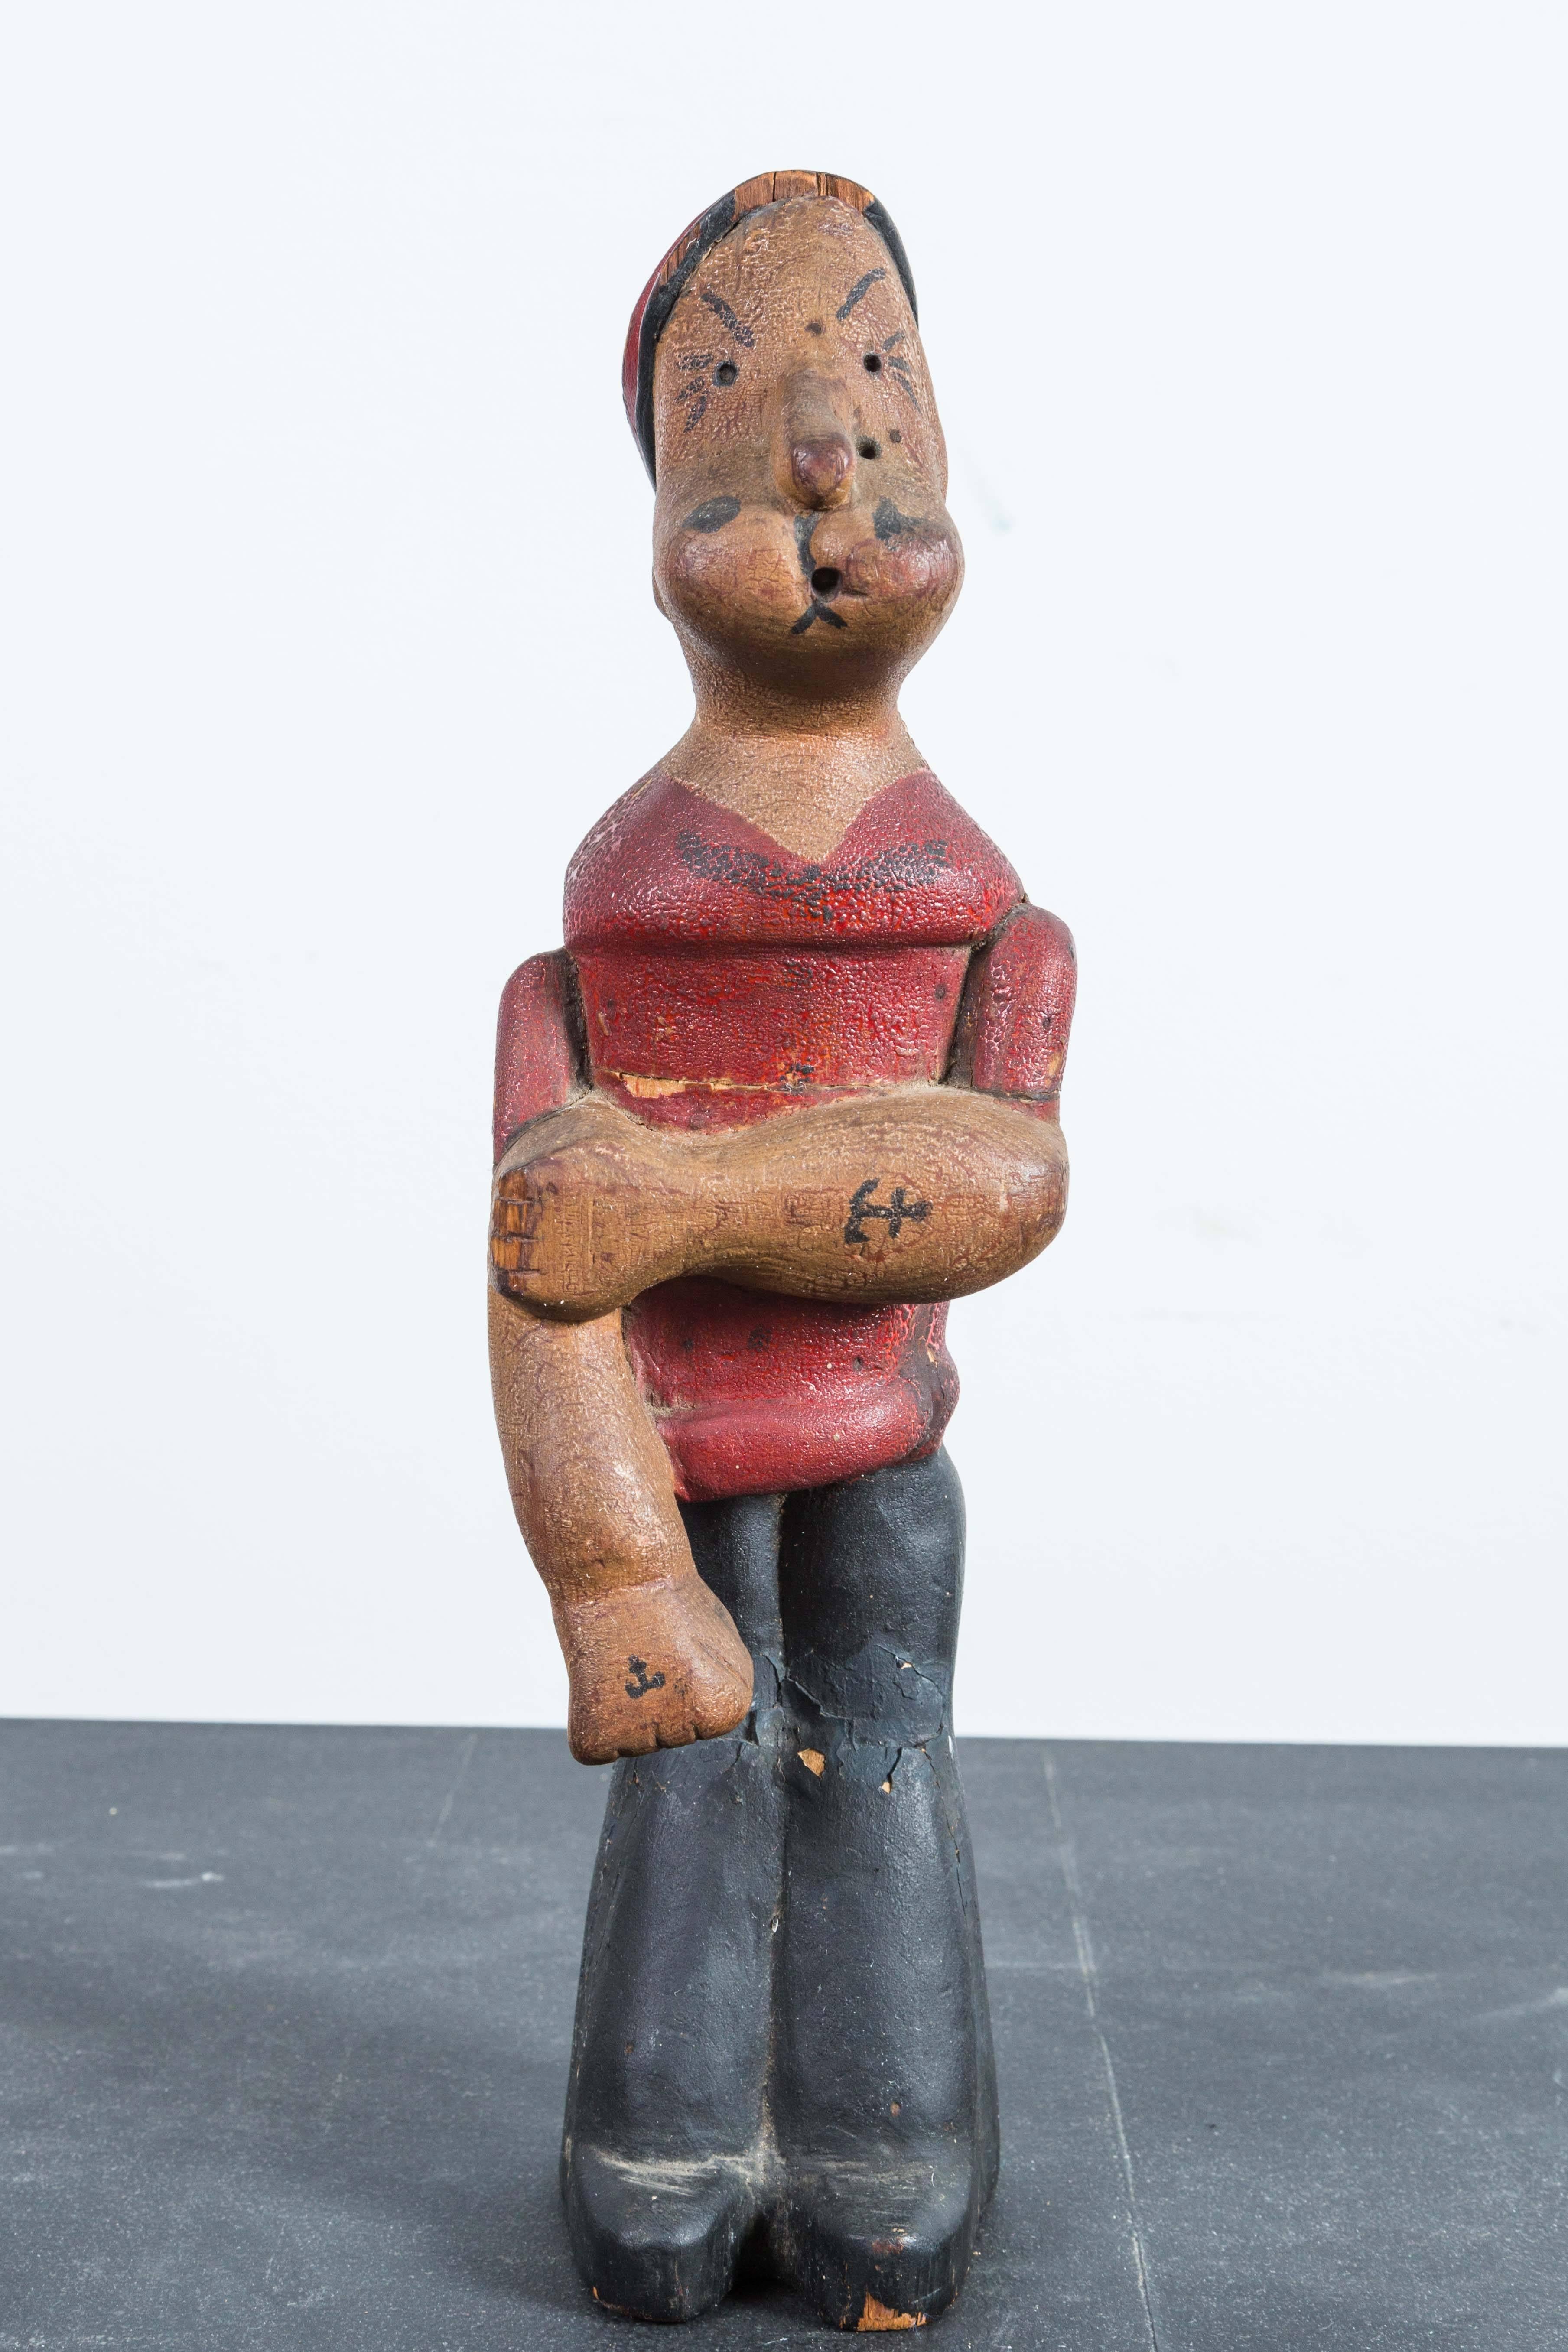 Alte Popeye-Figur. Handgeschnitztes Holz mit erstaunlicher alligatorischer Lackoberfläche und Anker-Tattoos auf dem Unterarm. Hergestellt aus drei geschnitzten Holzstücken.